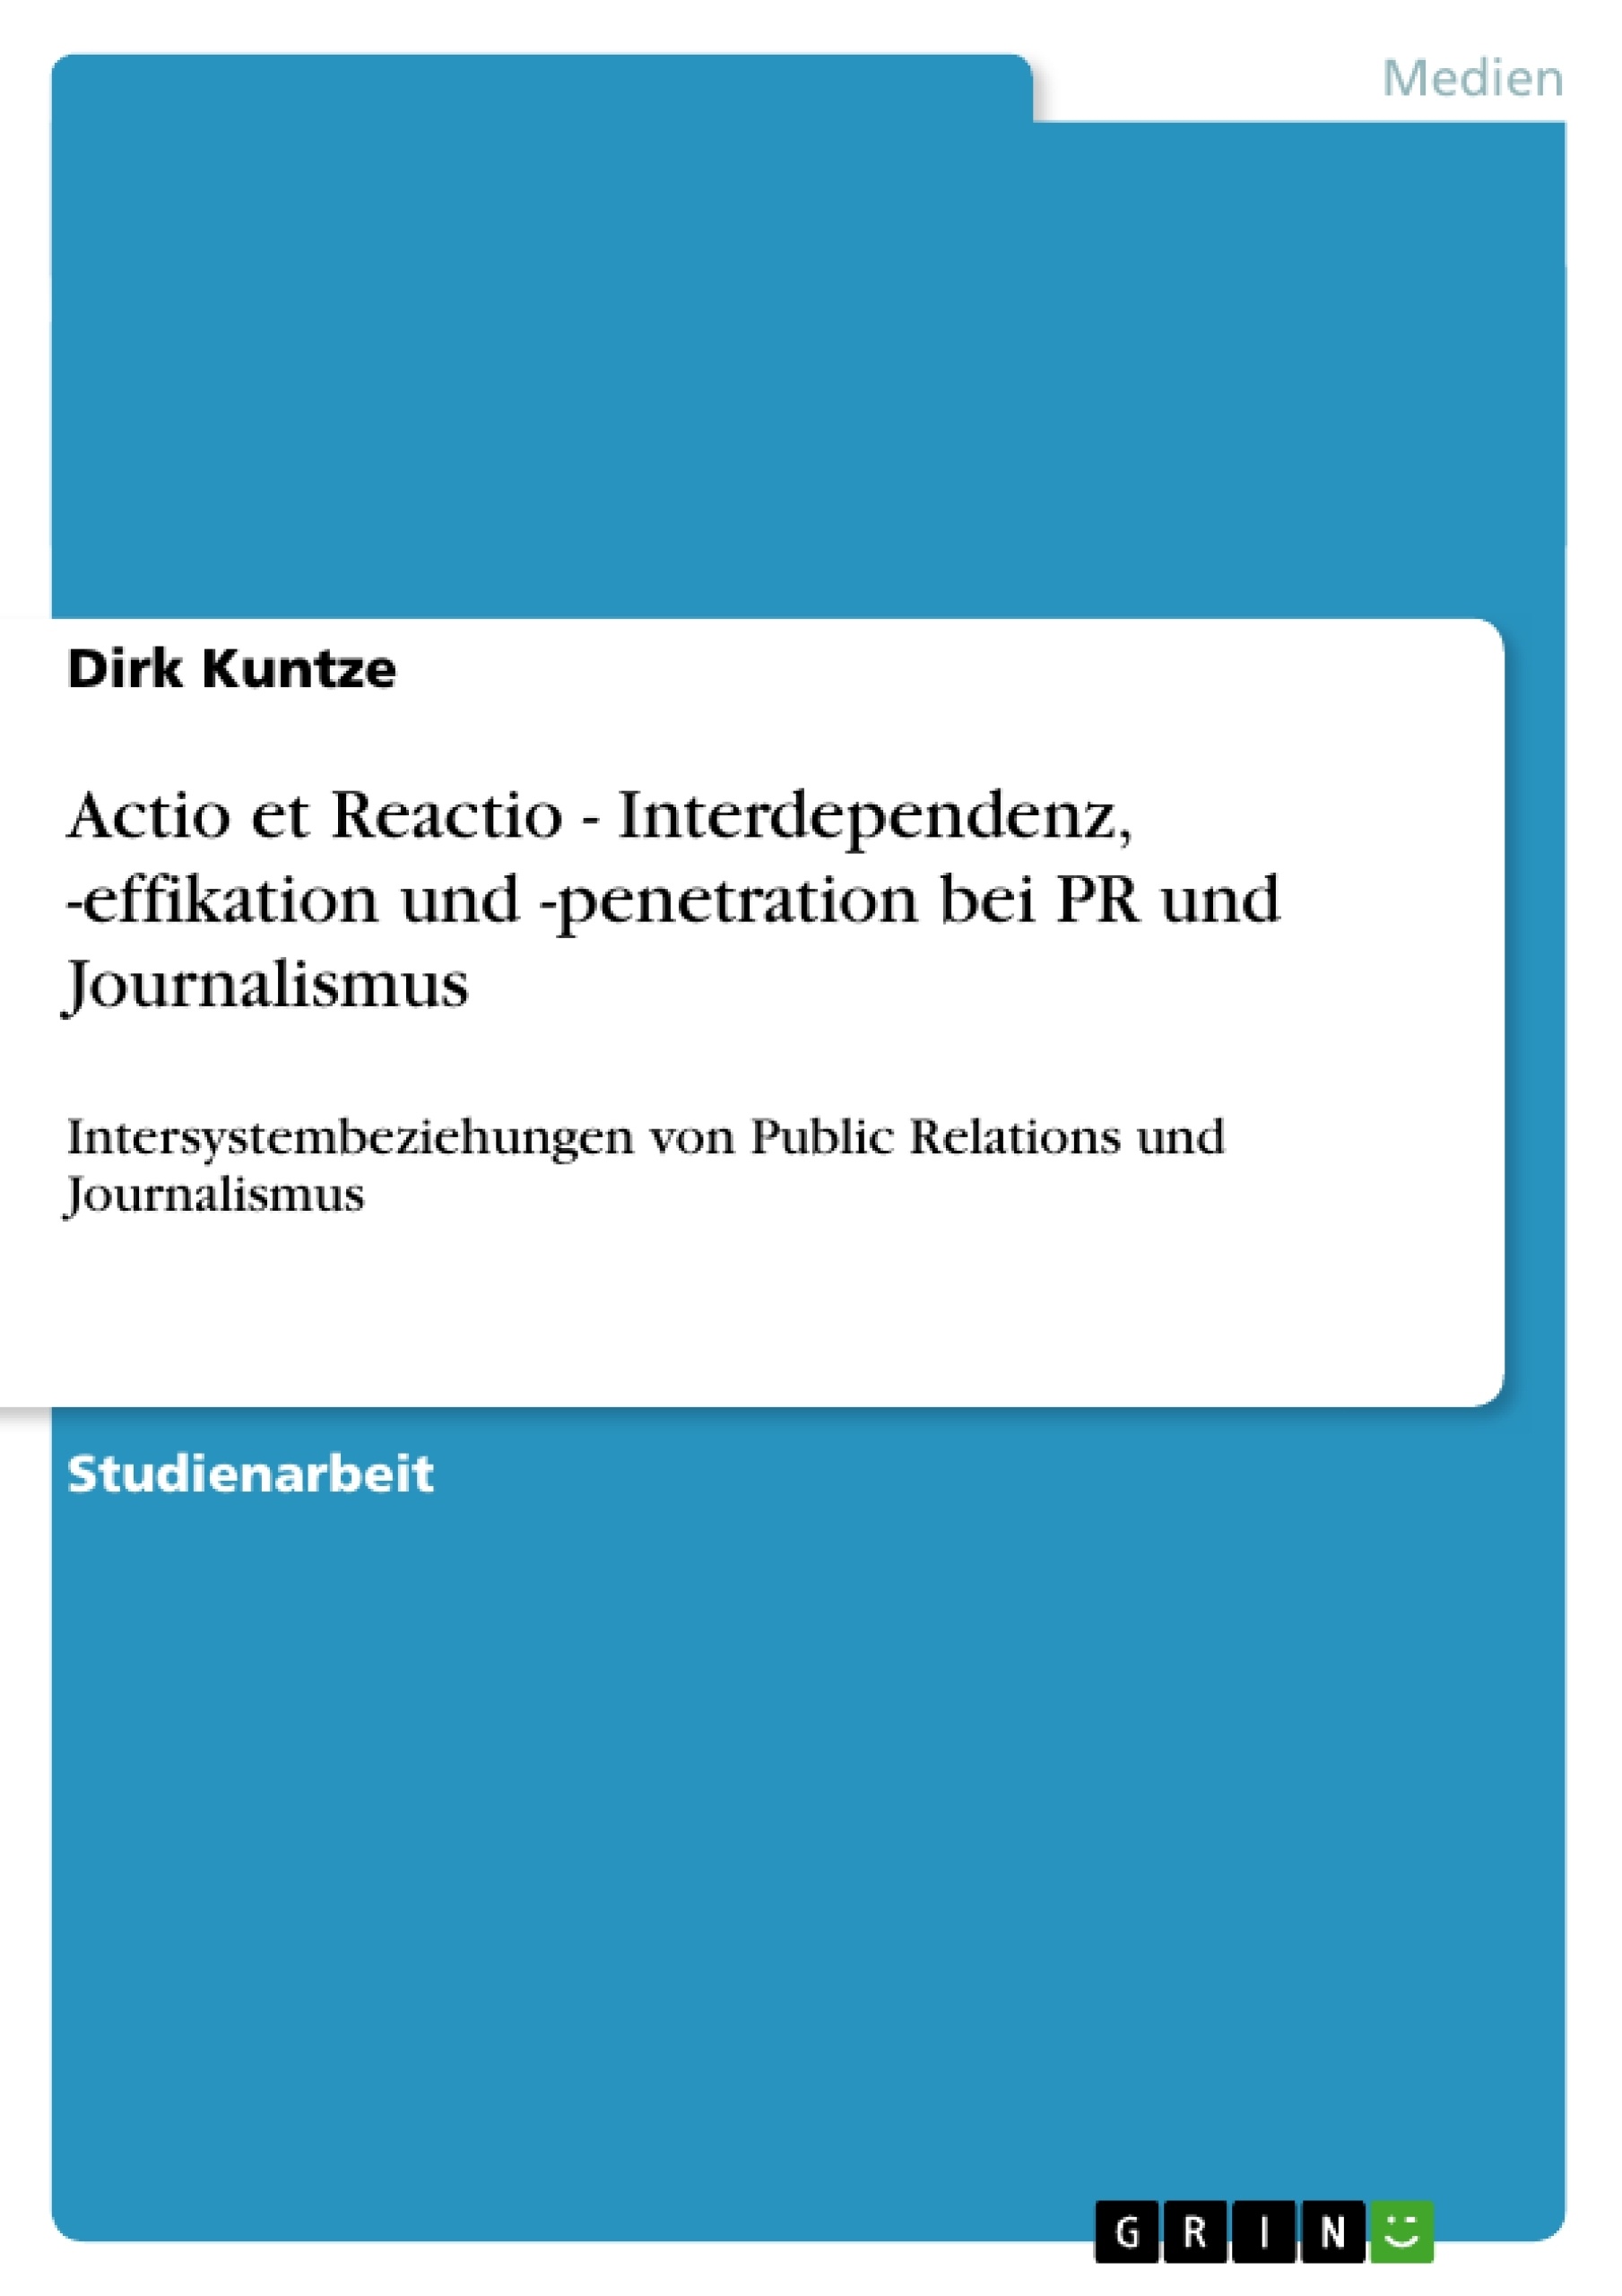 Title: Actio et Reactio - Interdependenz, -effikation und -penetration bei PR und Journalismus